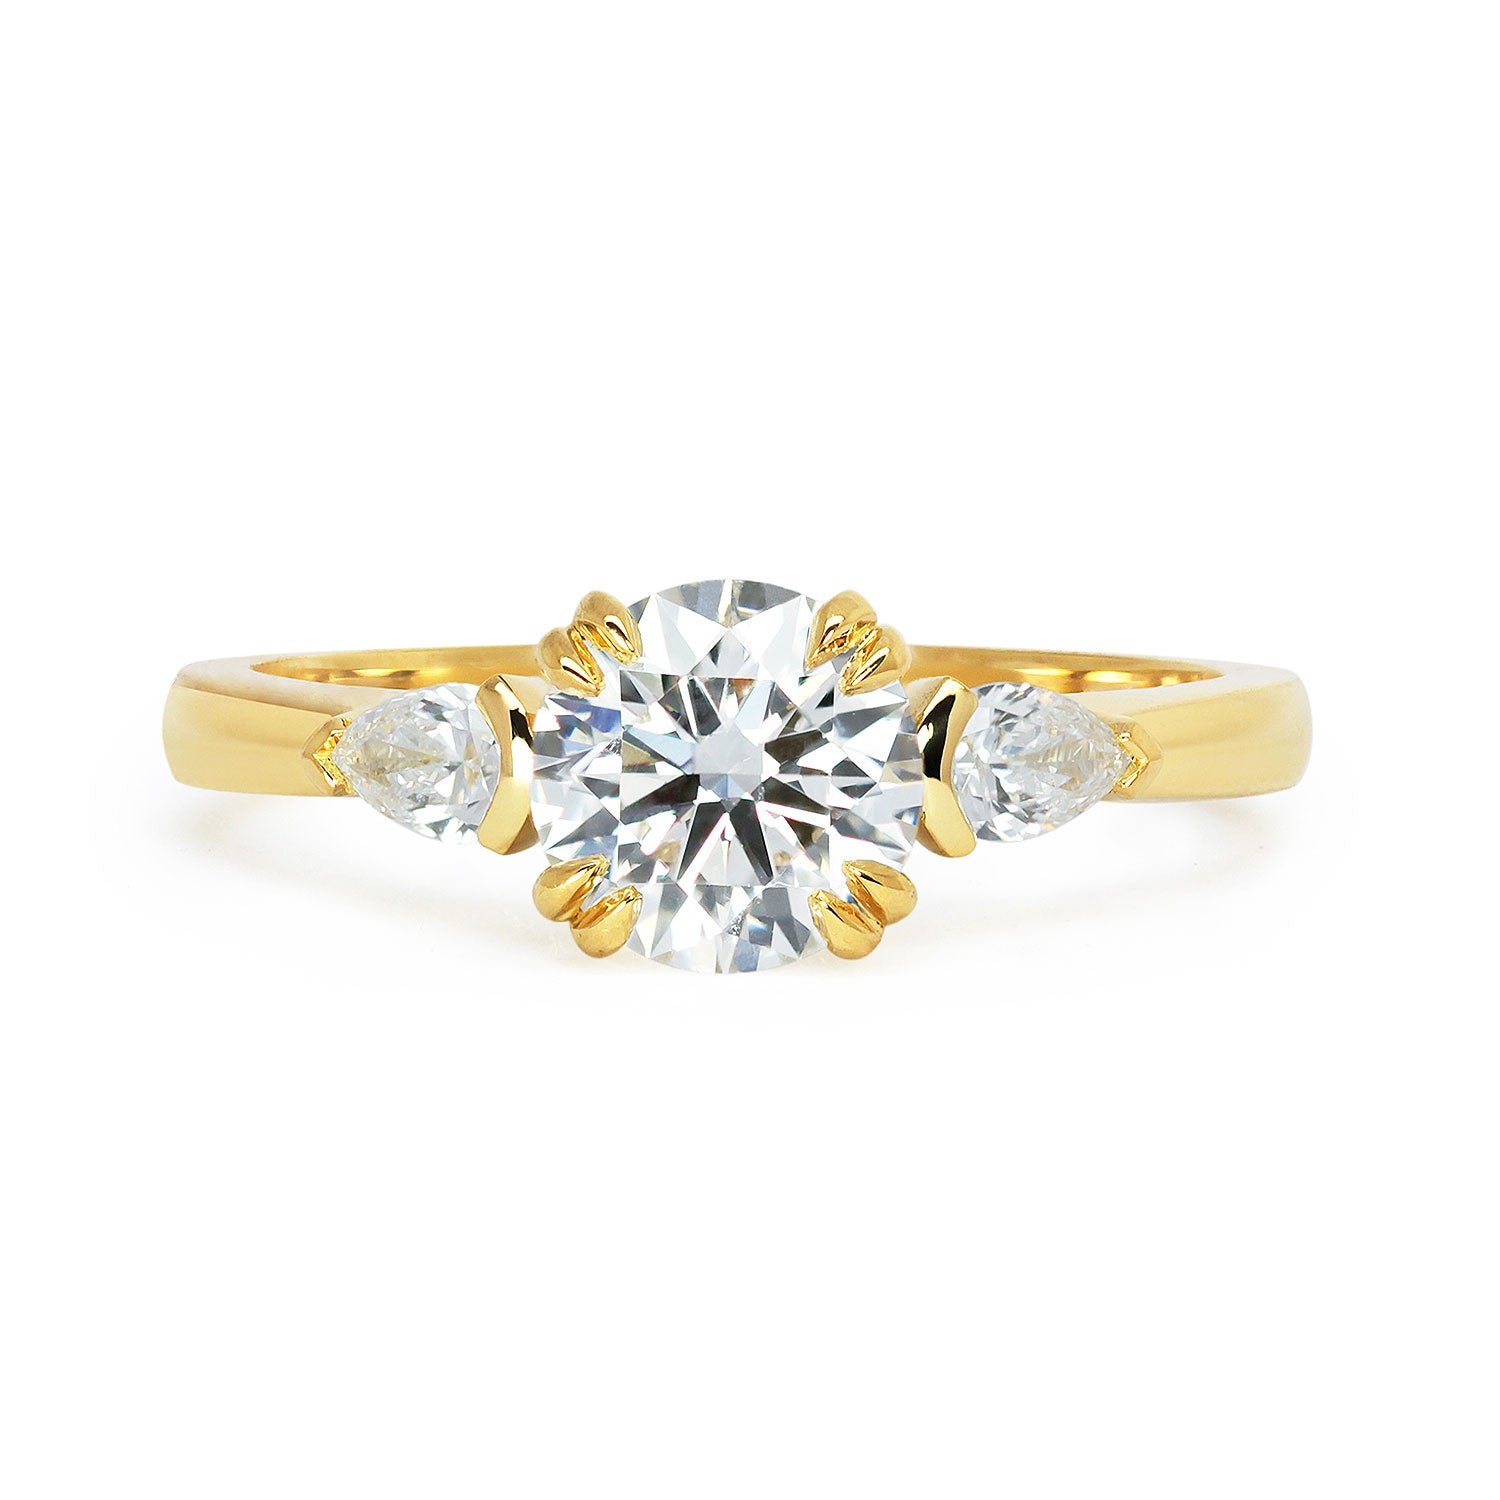 Bespoke Mark Lab-Grown Diamond Trilogy Engagement Ring